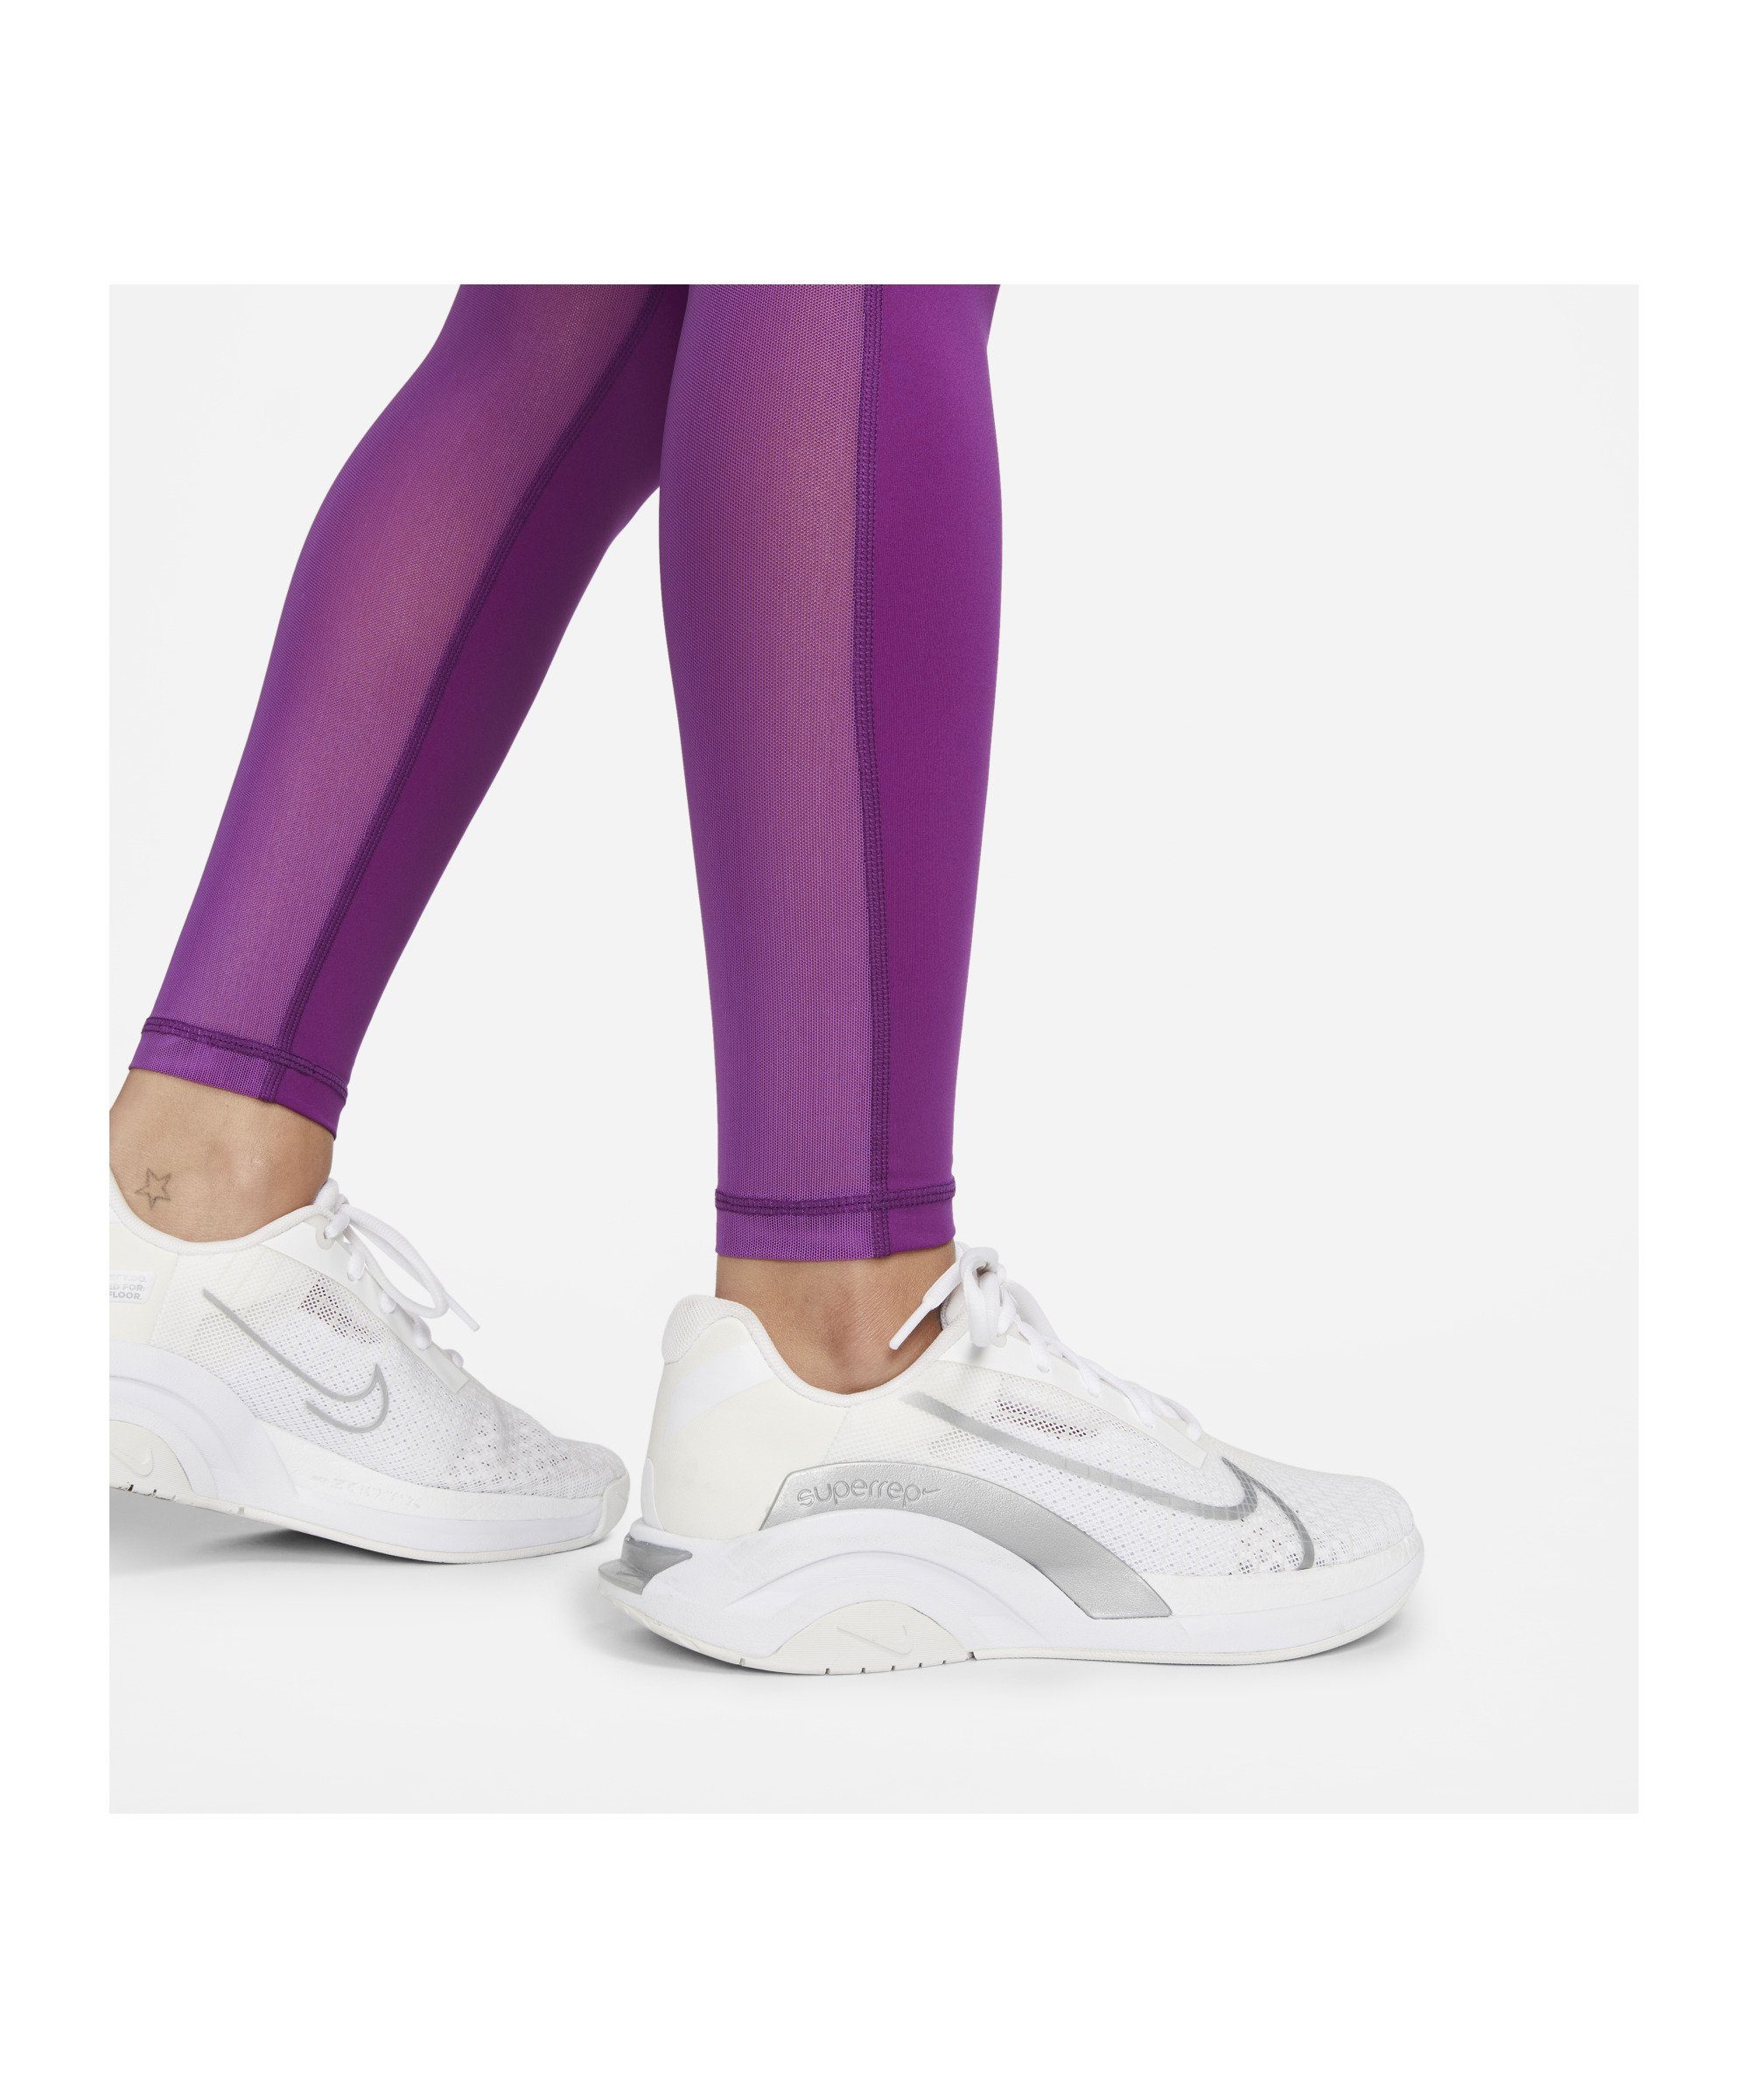 Nike Laufhose Leggings 365 mehrfarbig Damen